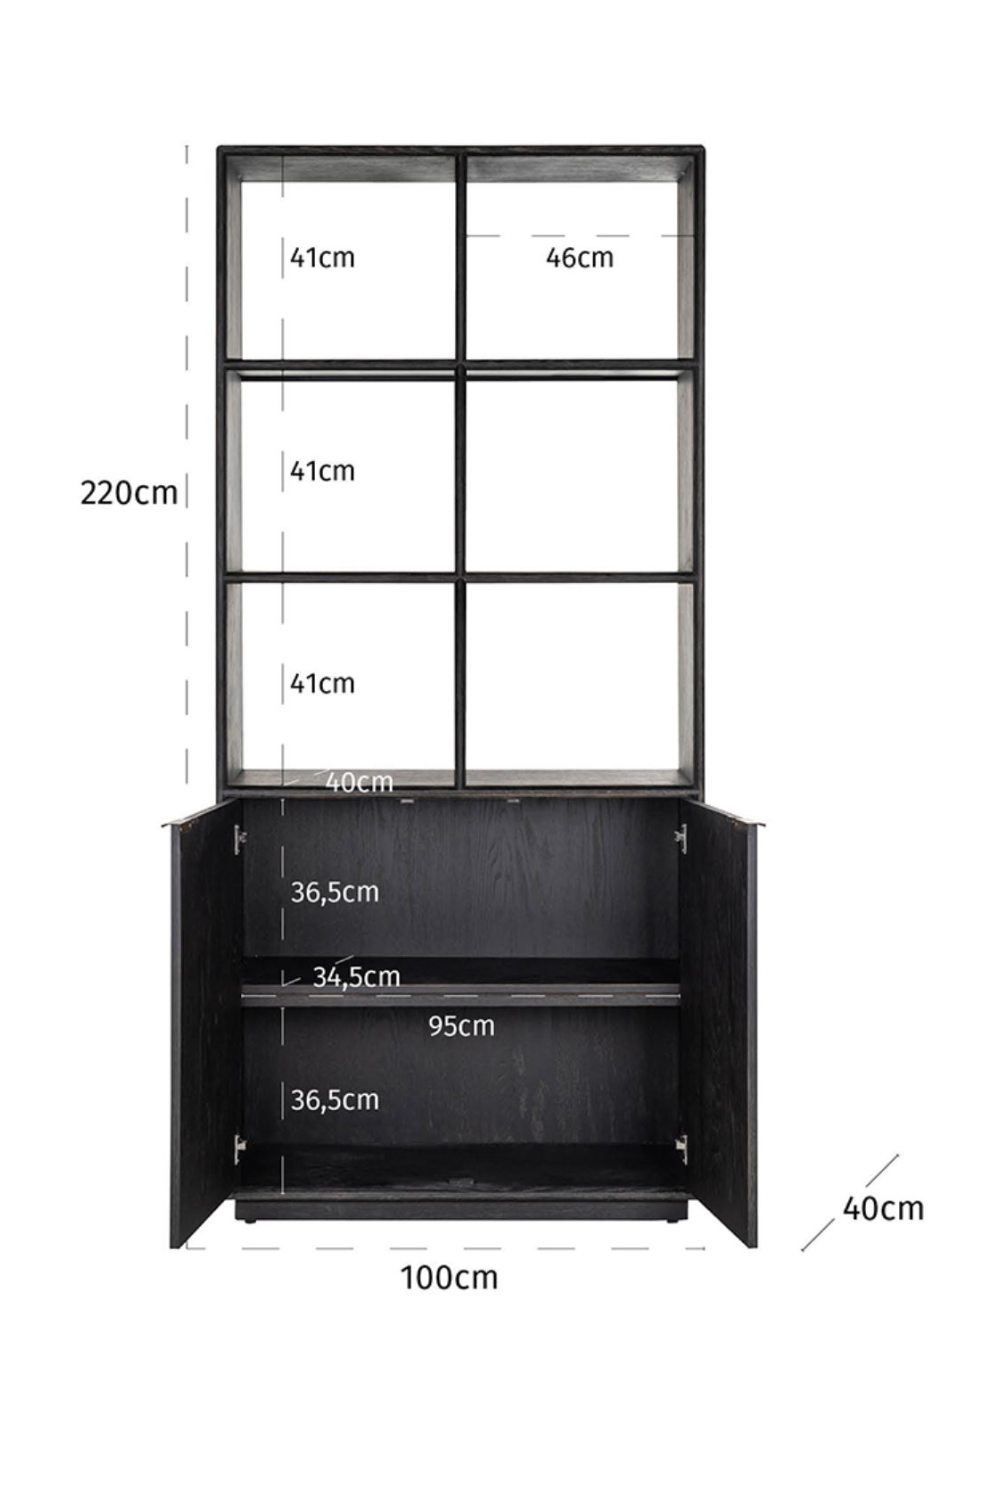 Black Oak 2-Door Bookcase | OROA Blackbone | Oroa.com